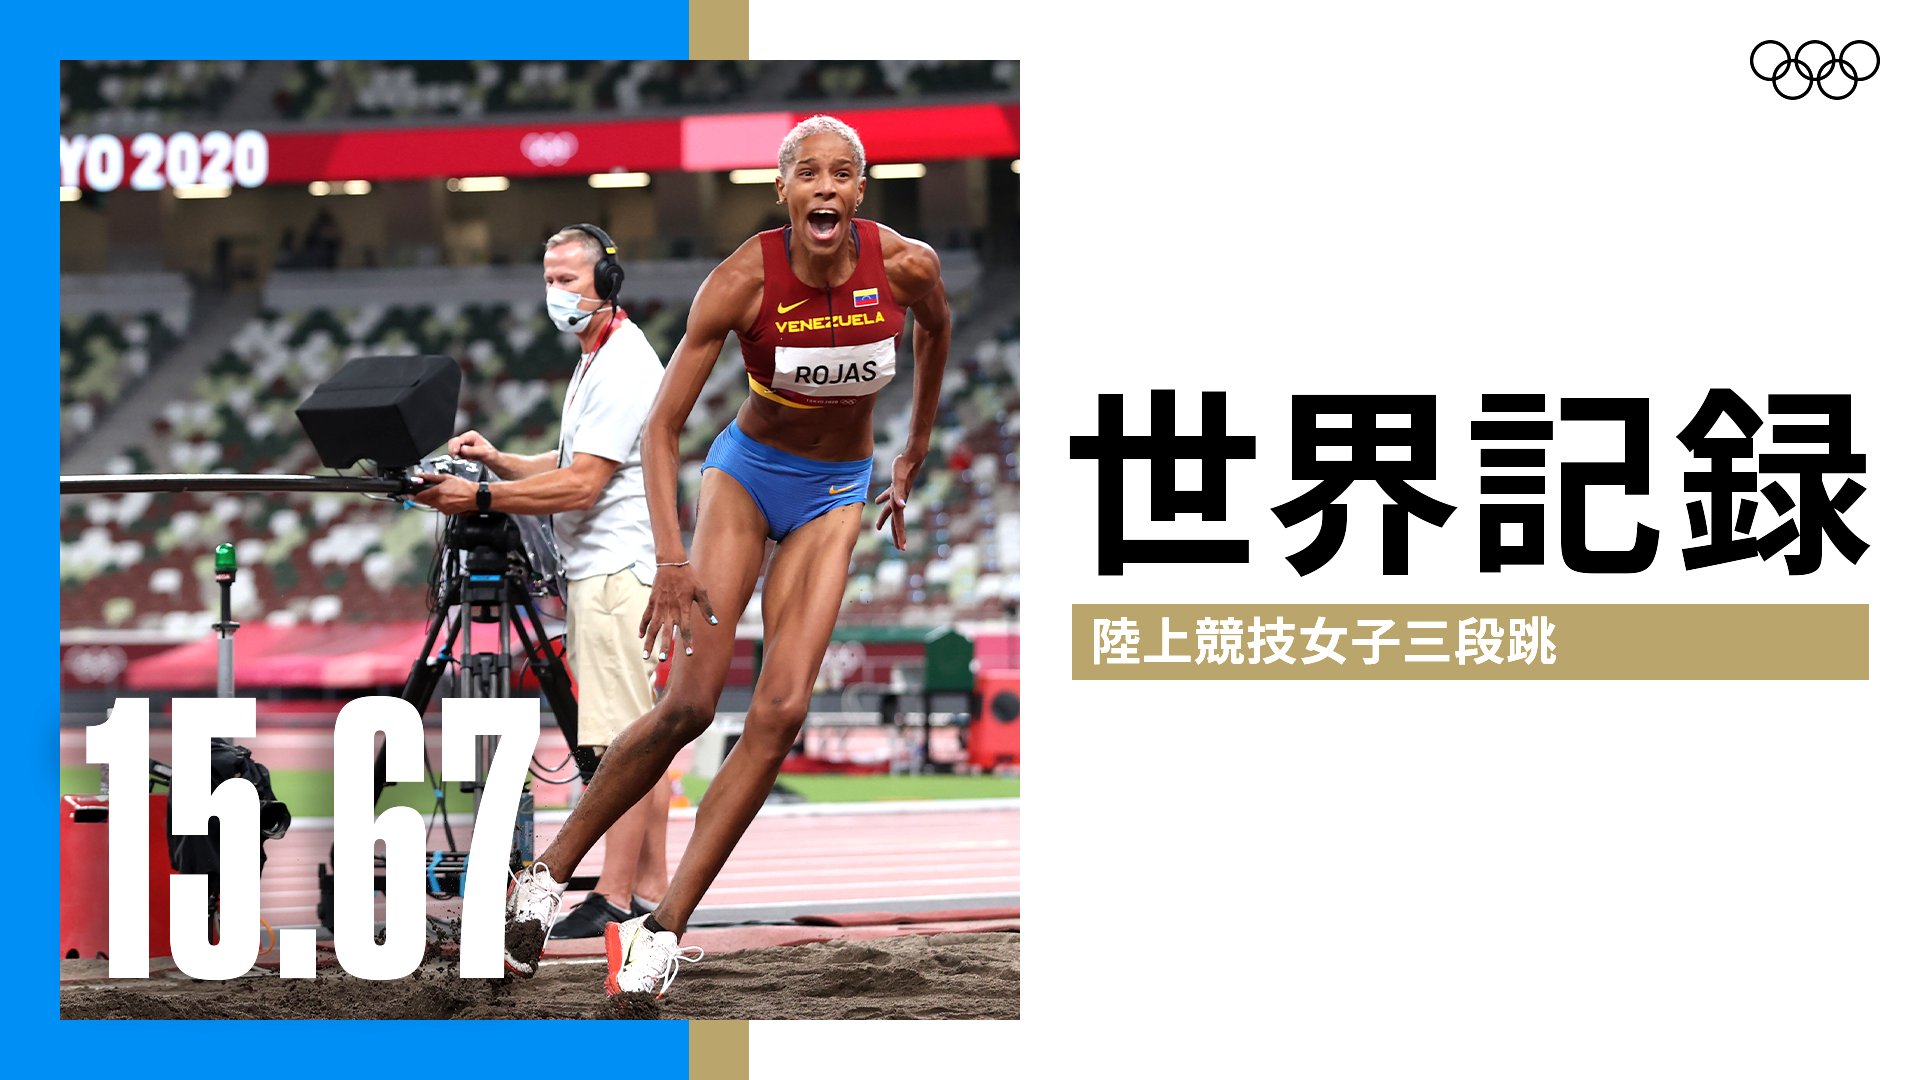 オリンピック 世界記録 陸上競技 女子三段跳決勝で Ven ベネズエラのジュリマール ロハスが世界記録で金メダルを獲得 Ven ジュリマール ロハス 15 67m おめでとうございます Tokyo オリンピック Athletics T Co Ttvw4wmu5w